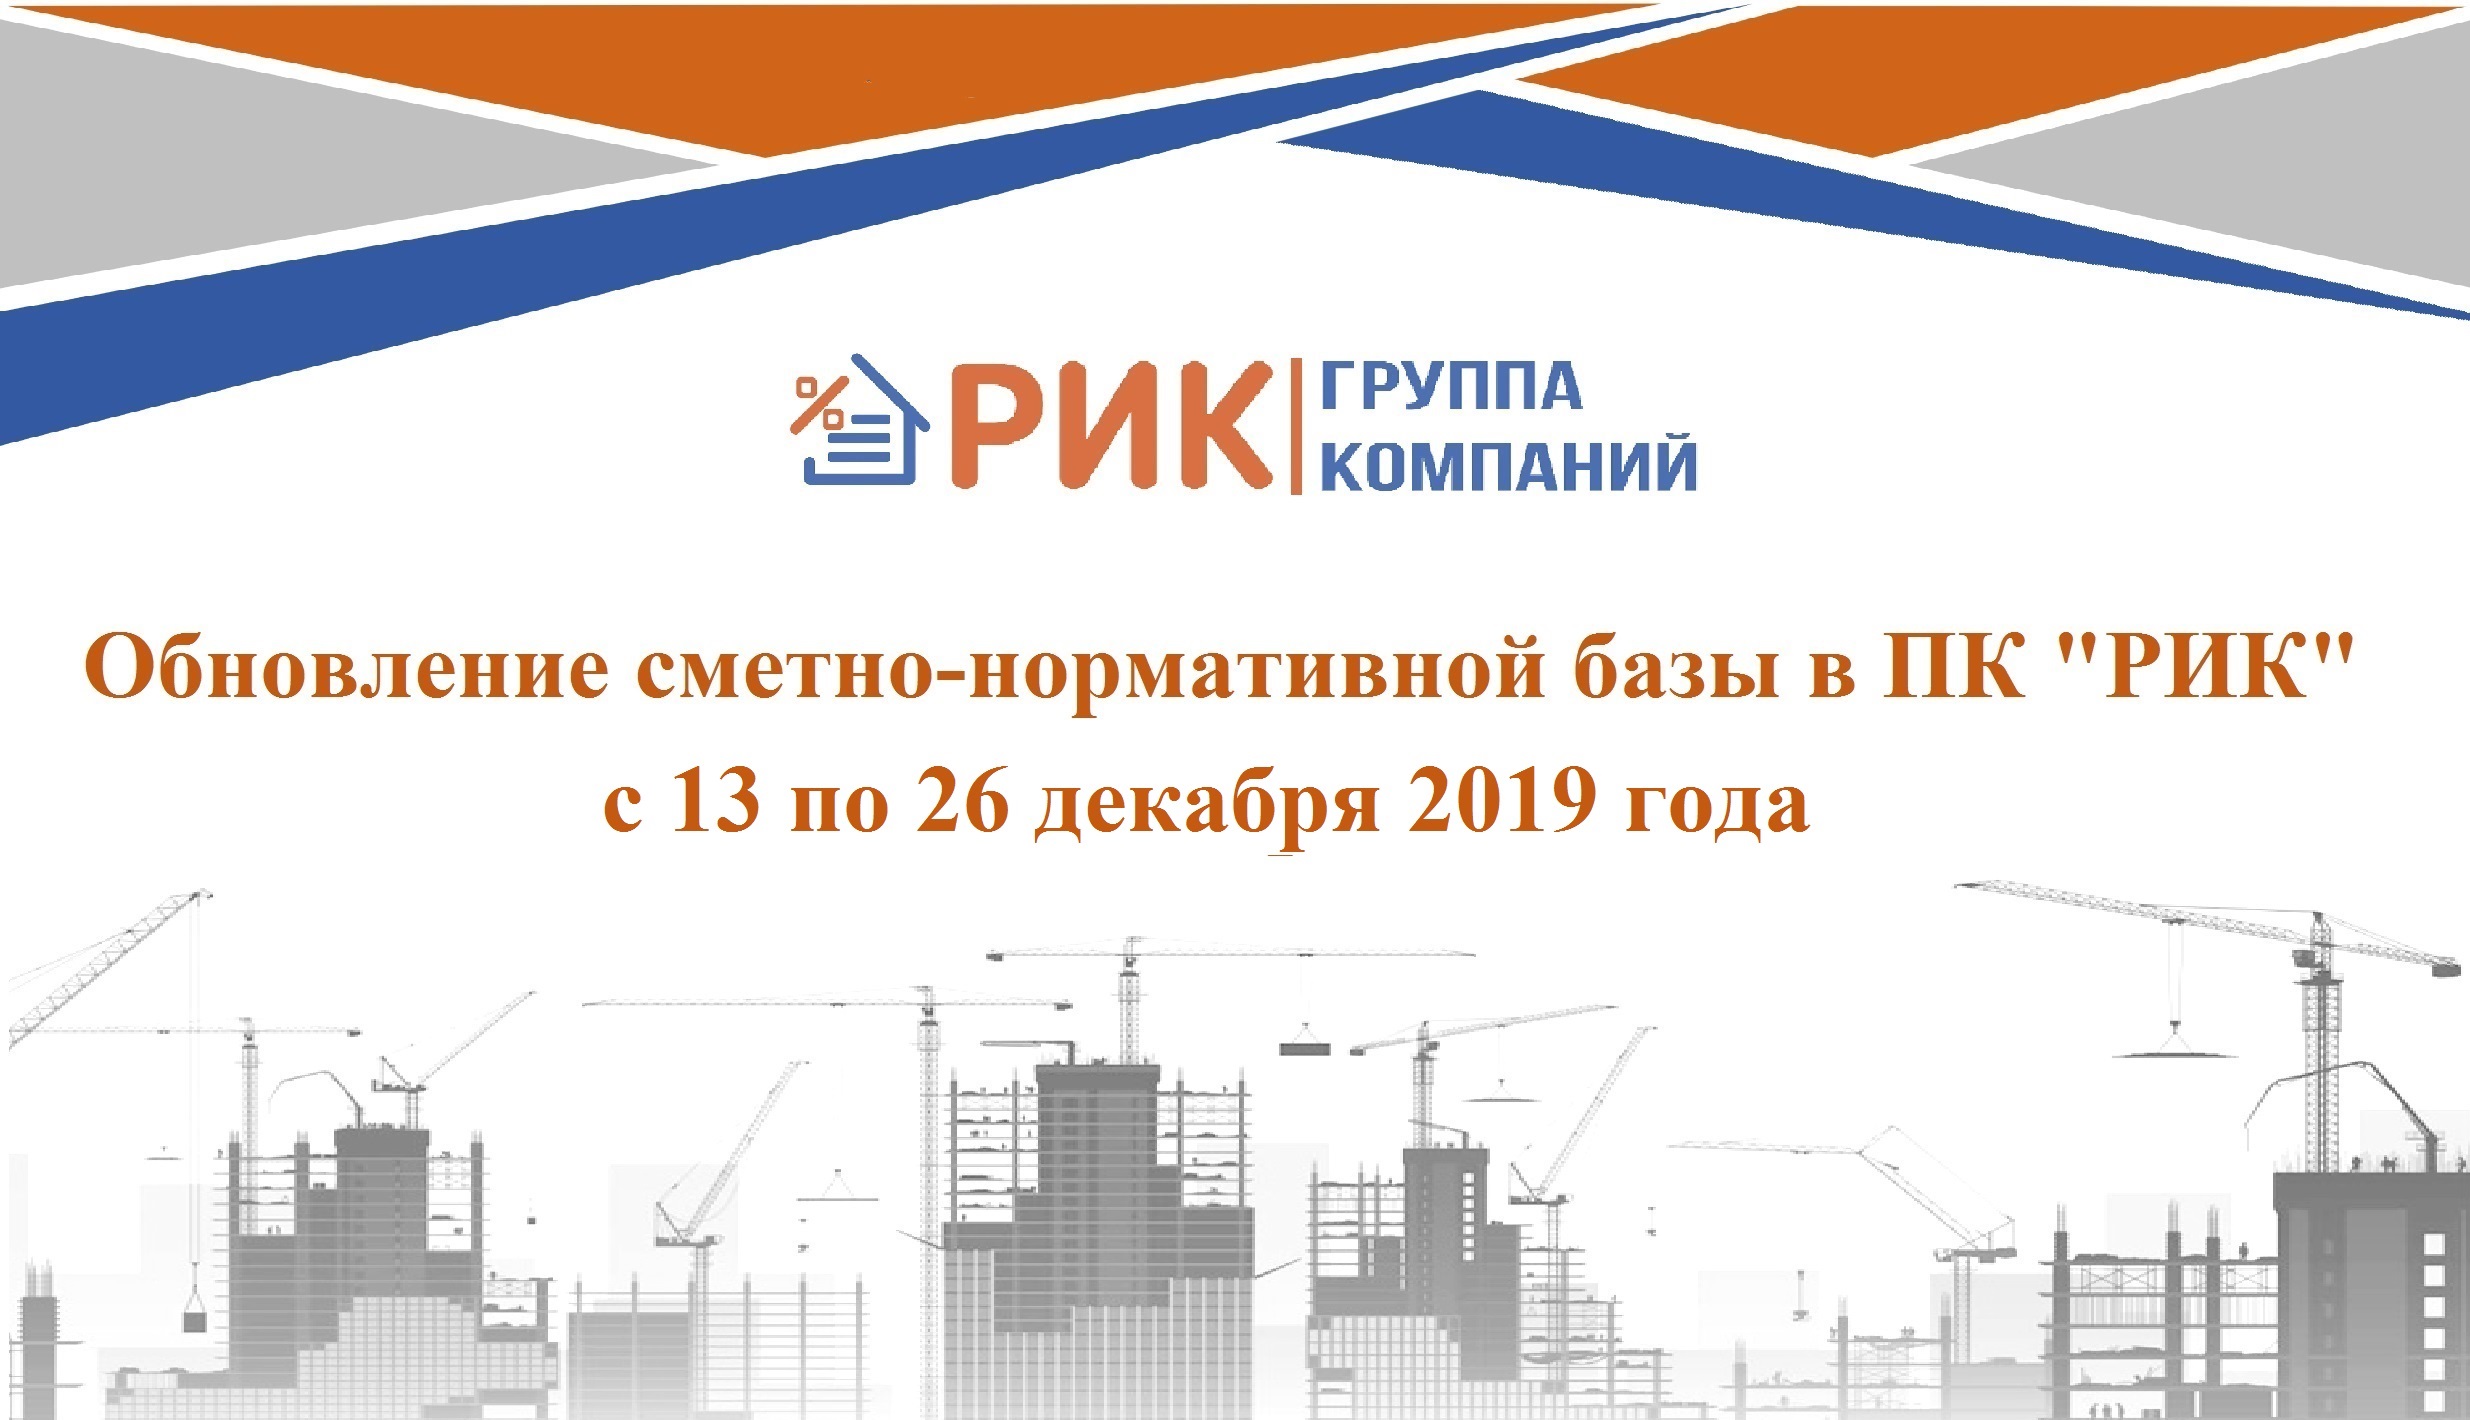 Обновление сметно-нормативной базы в ПК "РИК" с 13 по 26 декабря 2019 года.